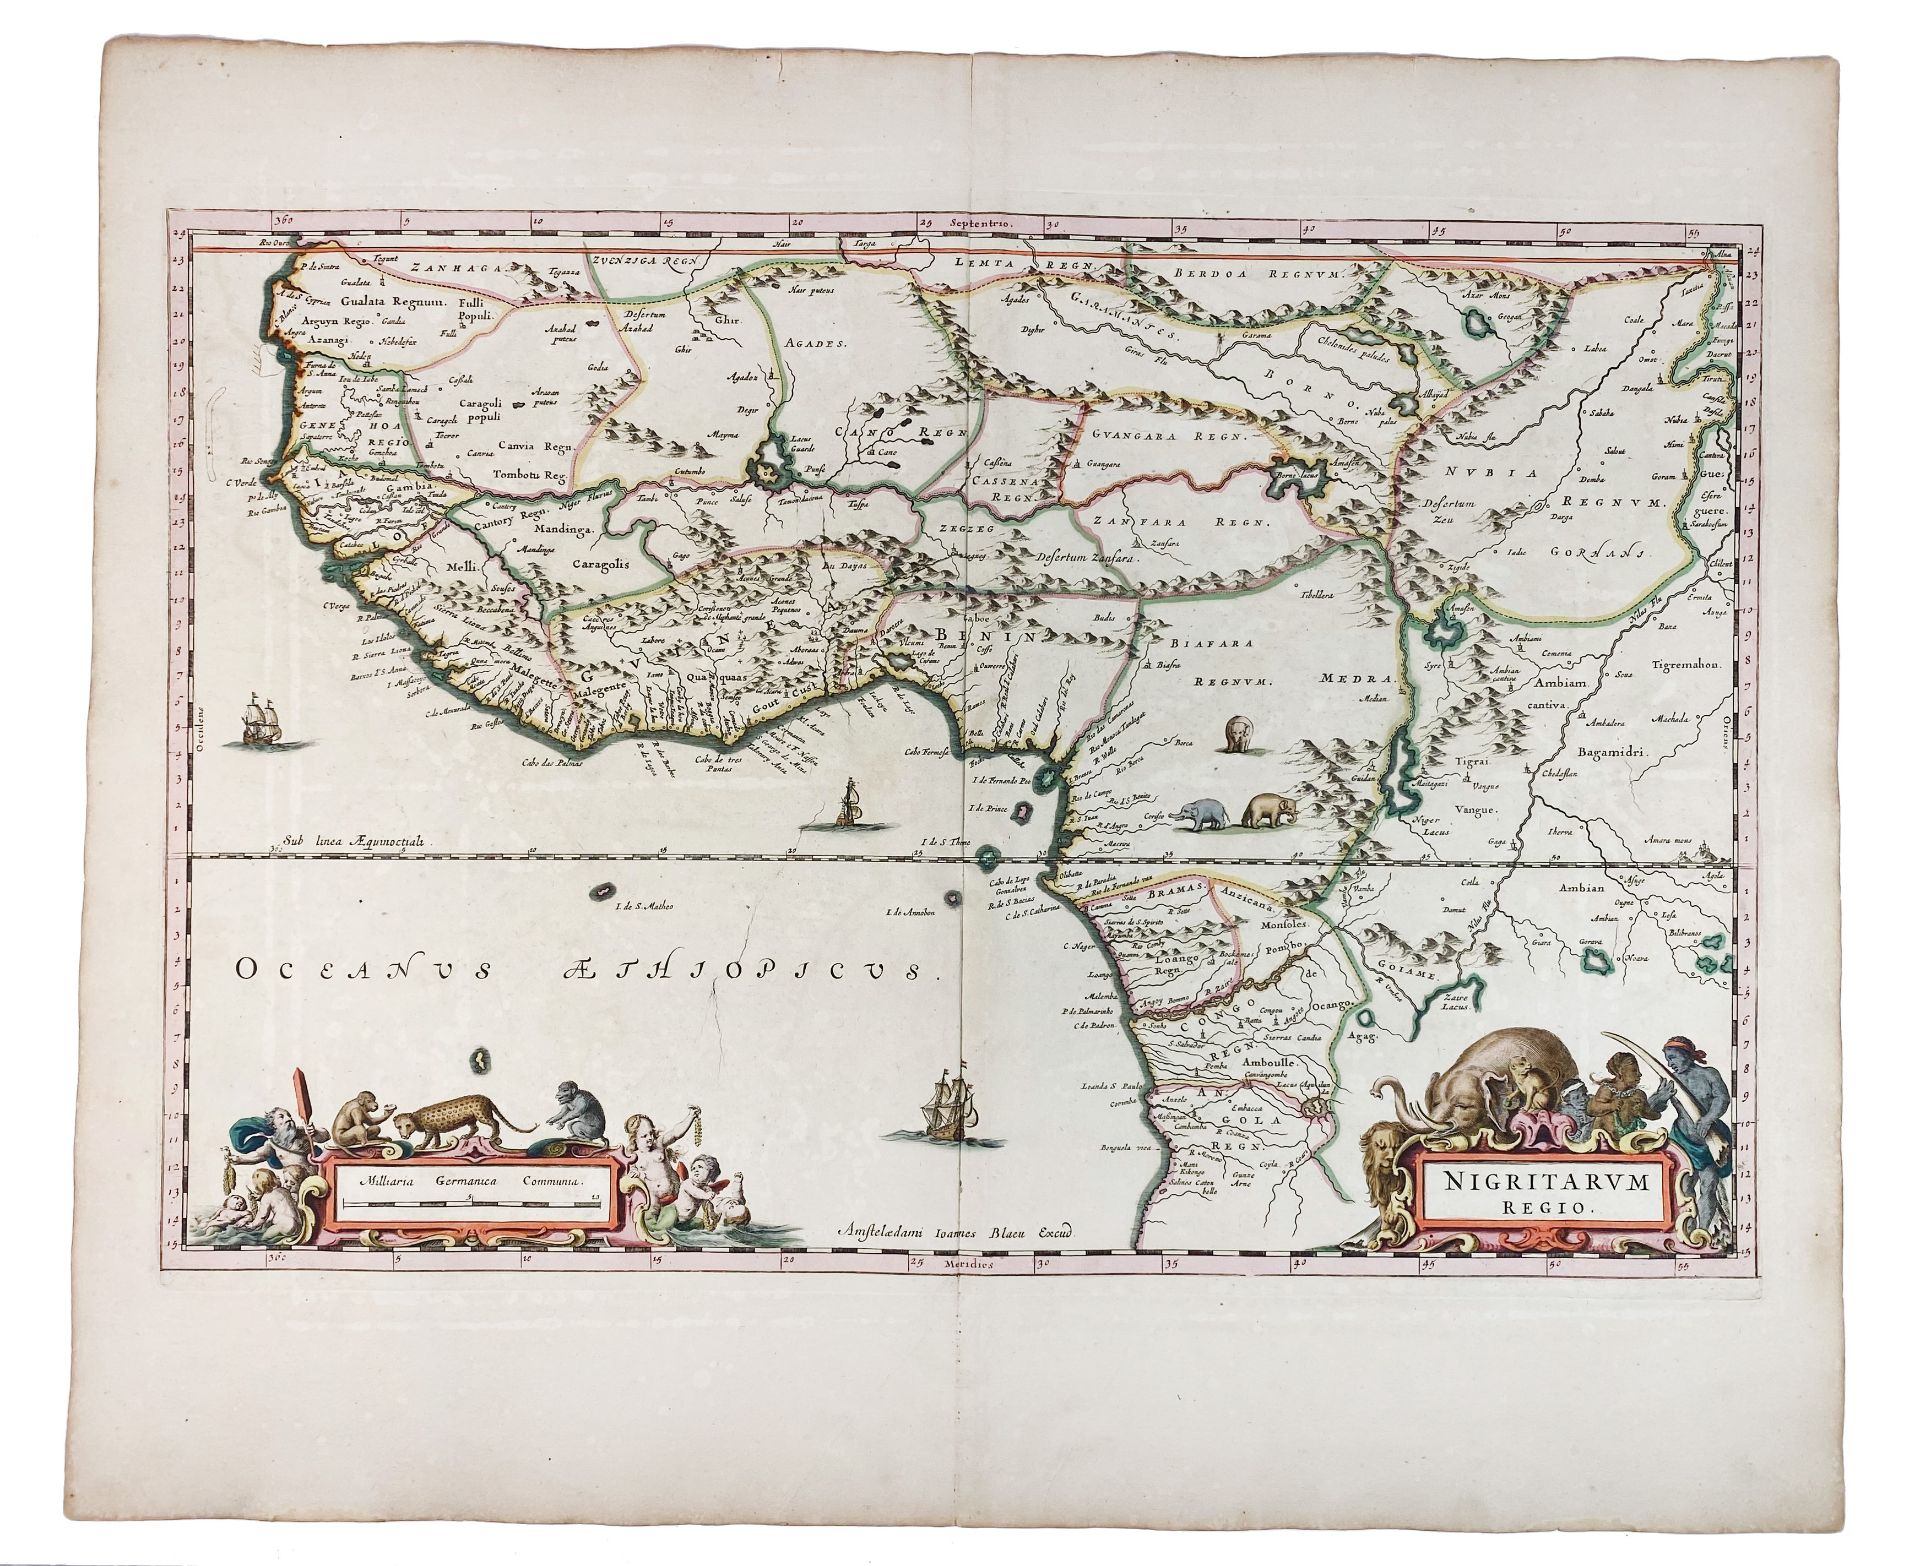 AFRICA -- "NIGRITARUM REGIO". (Amst.), J. Blaeu, (c. 1670). Handcold. engr. map, w